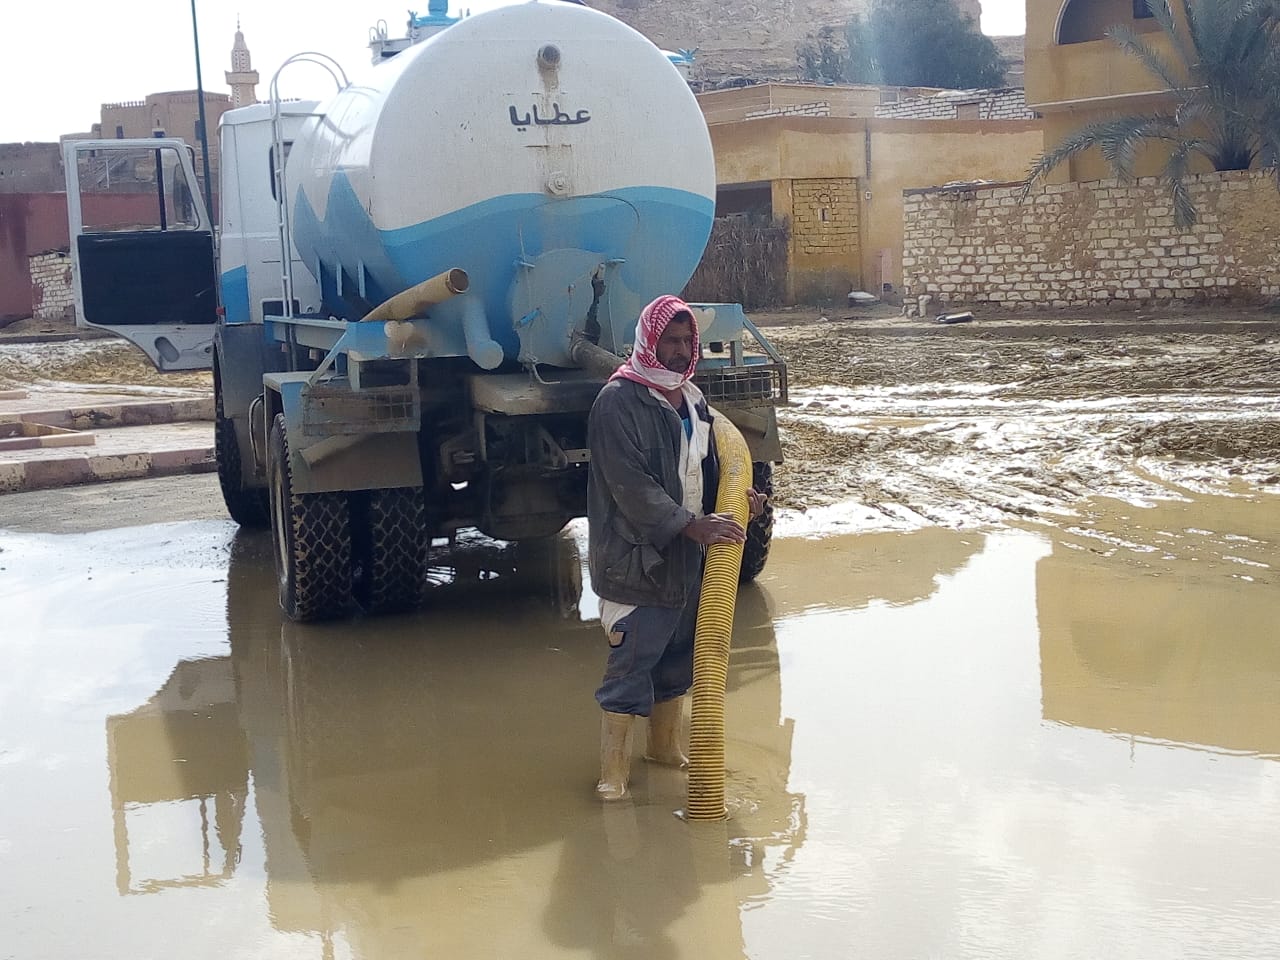   مجلس مدينة سيوة إزالة تراكمات مياه الأمطار